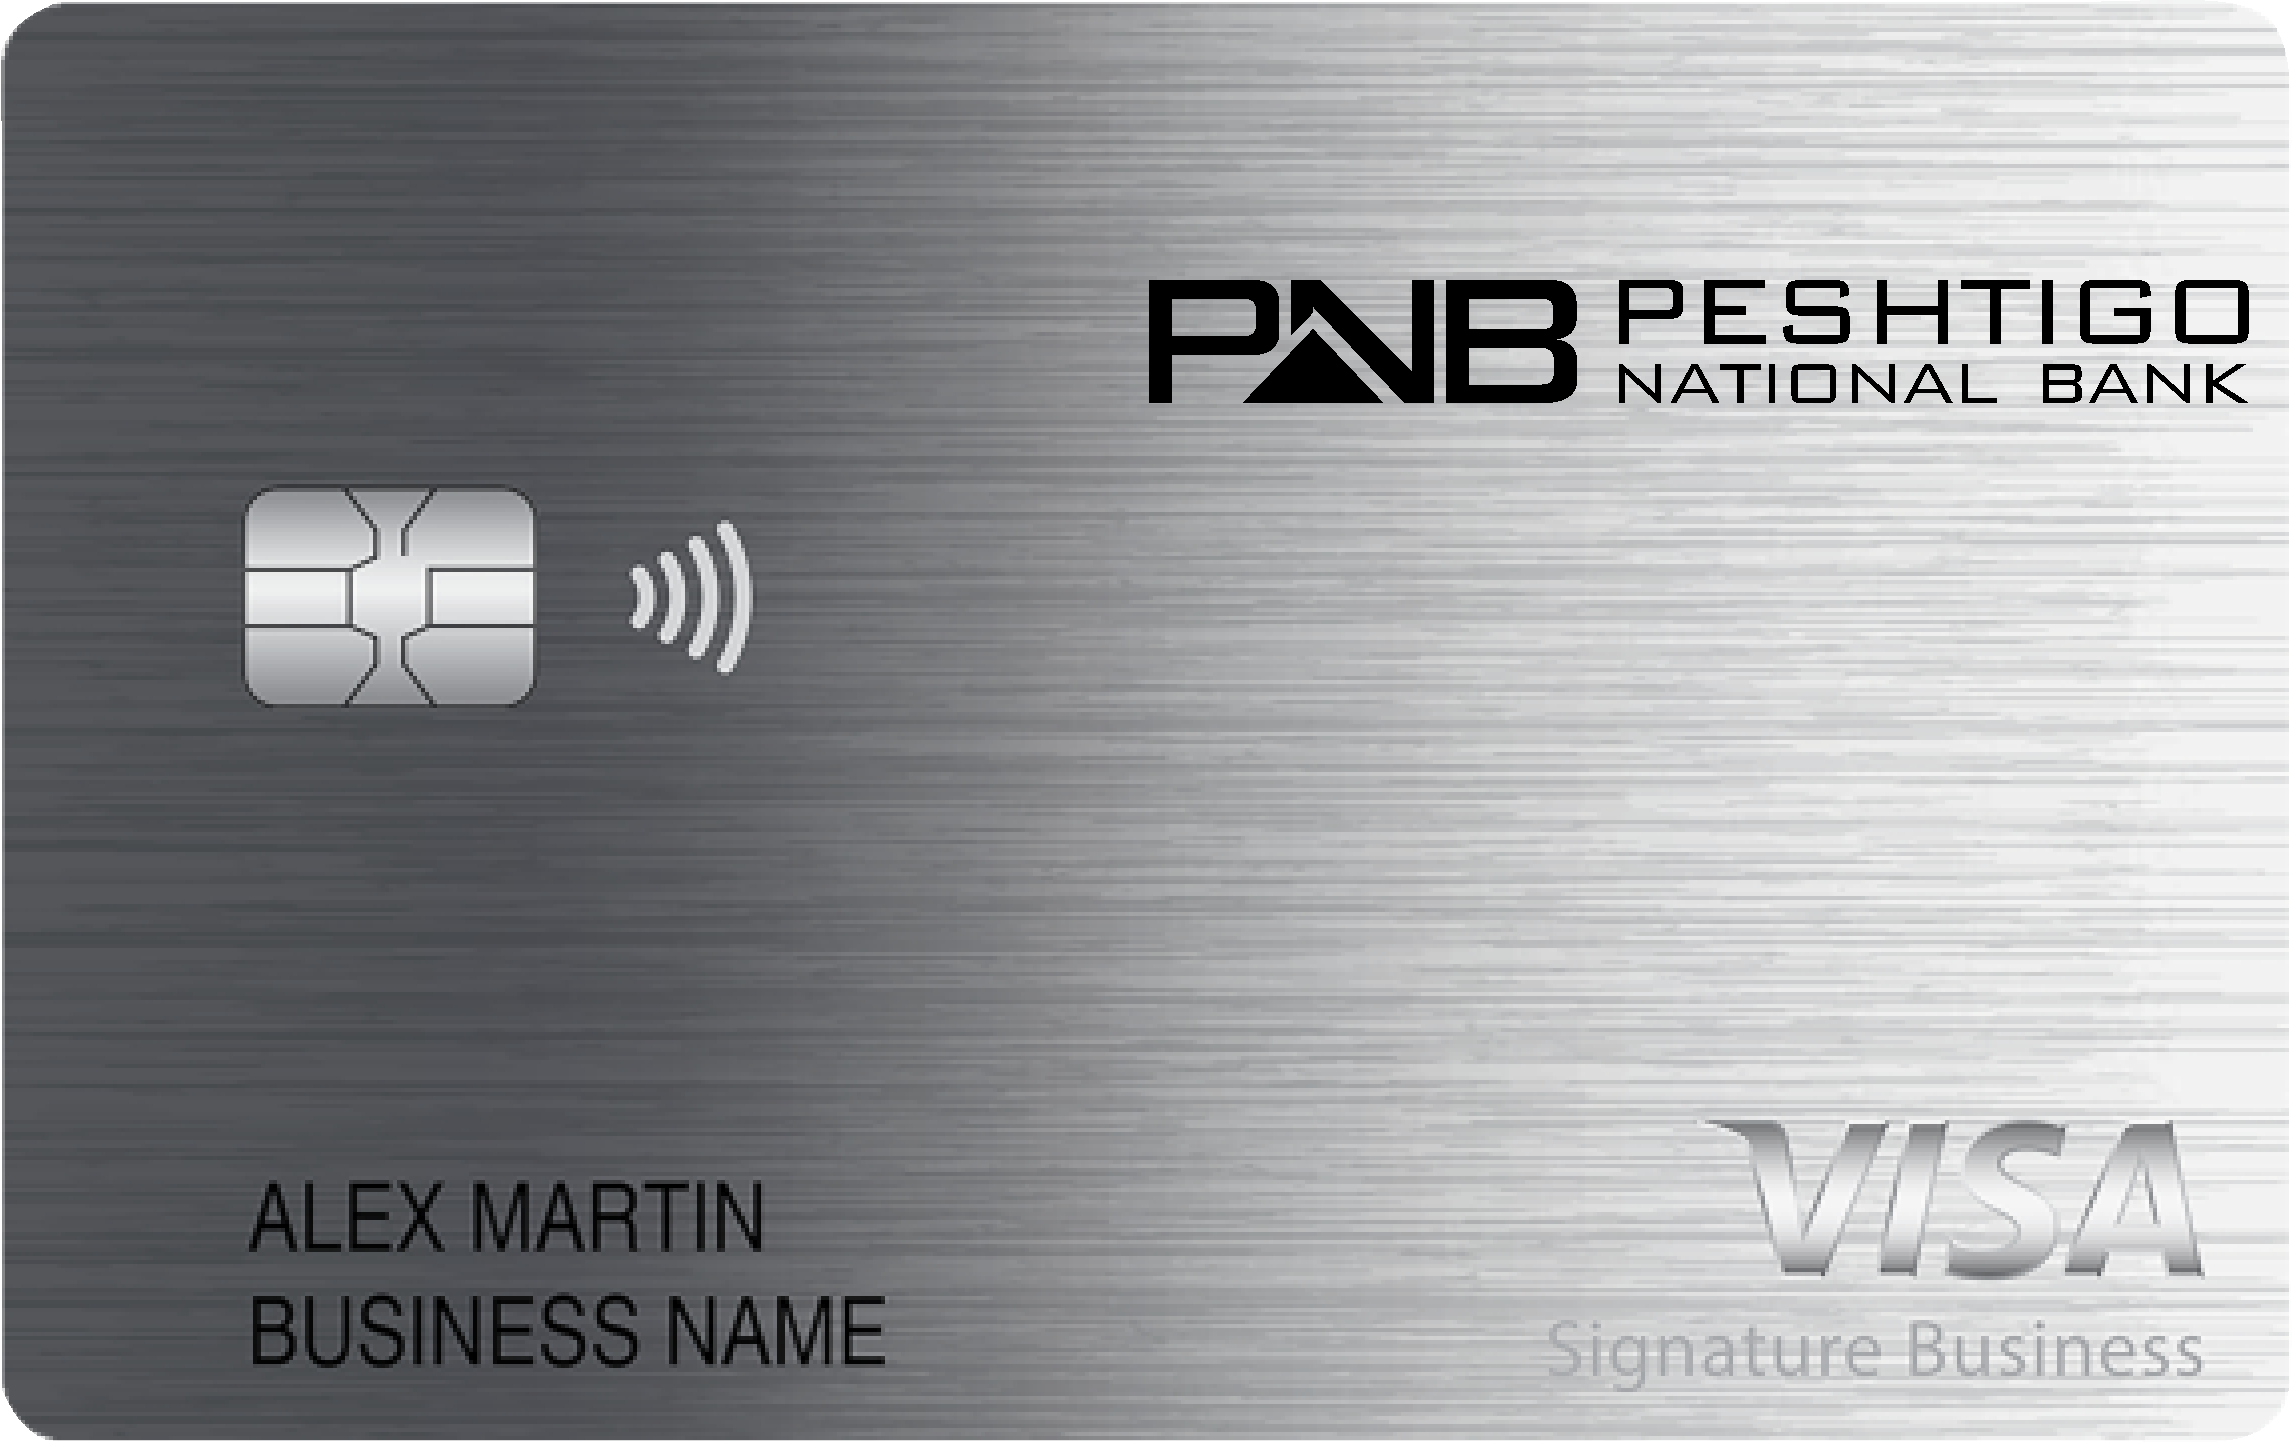 Peshtigo National Bank Smart Business Rewards Card